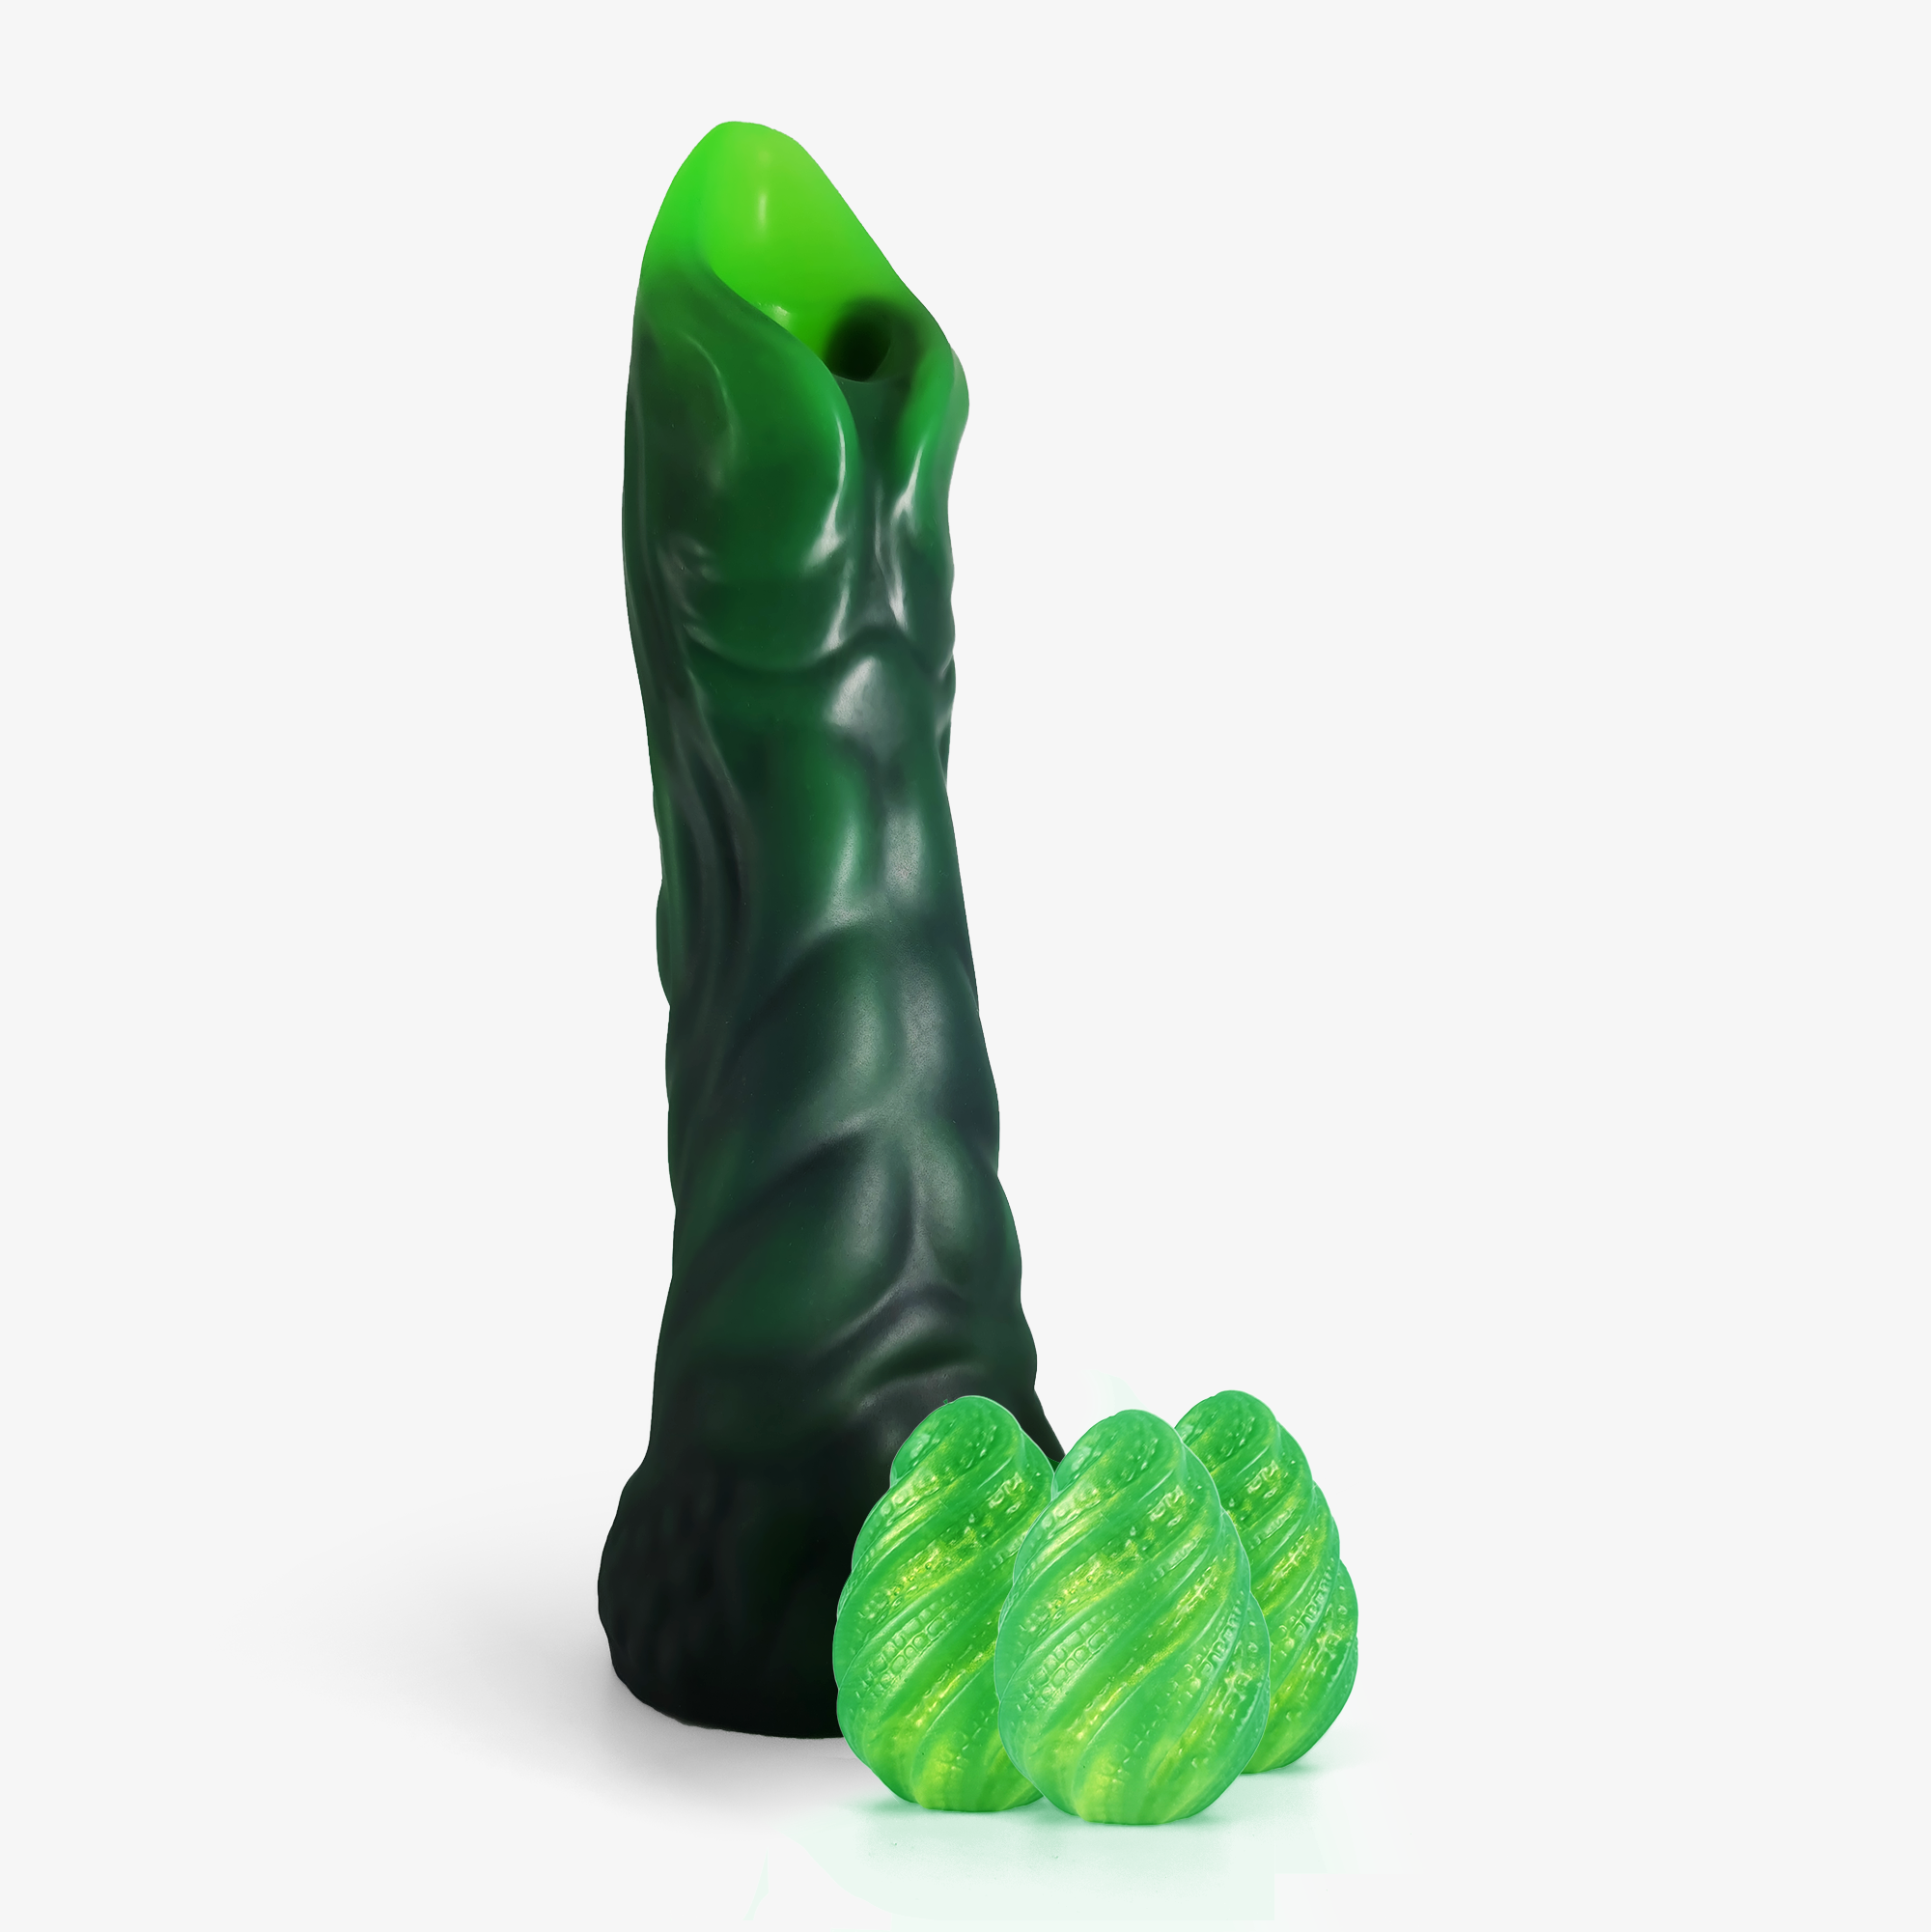 corey voisin recommends alien sex toy pic